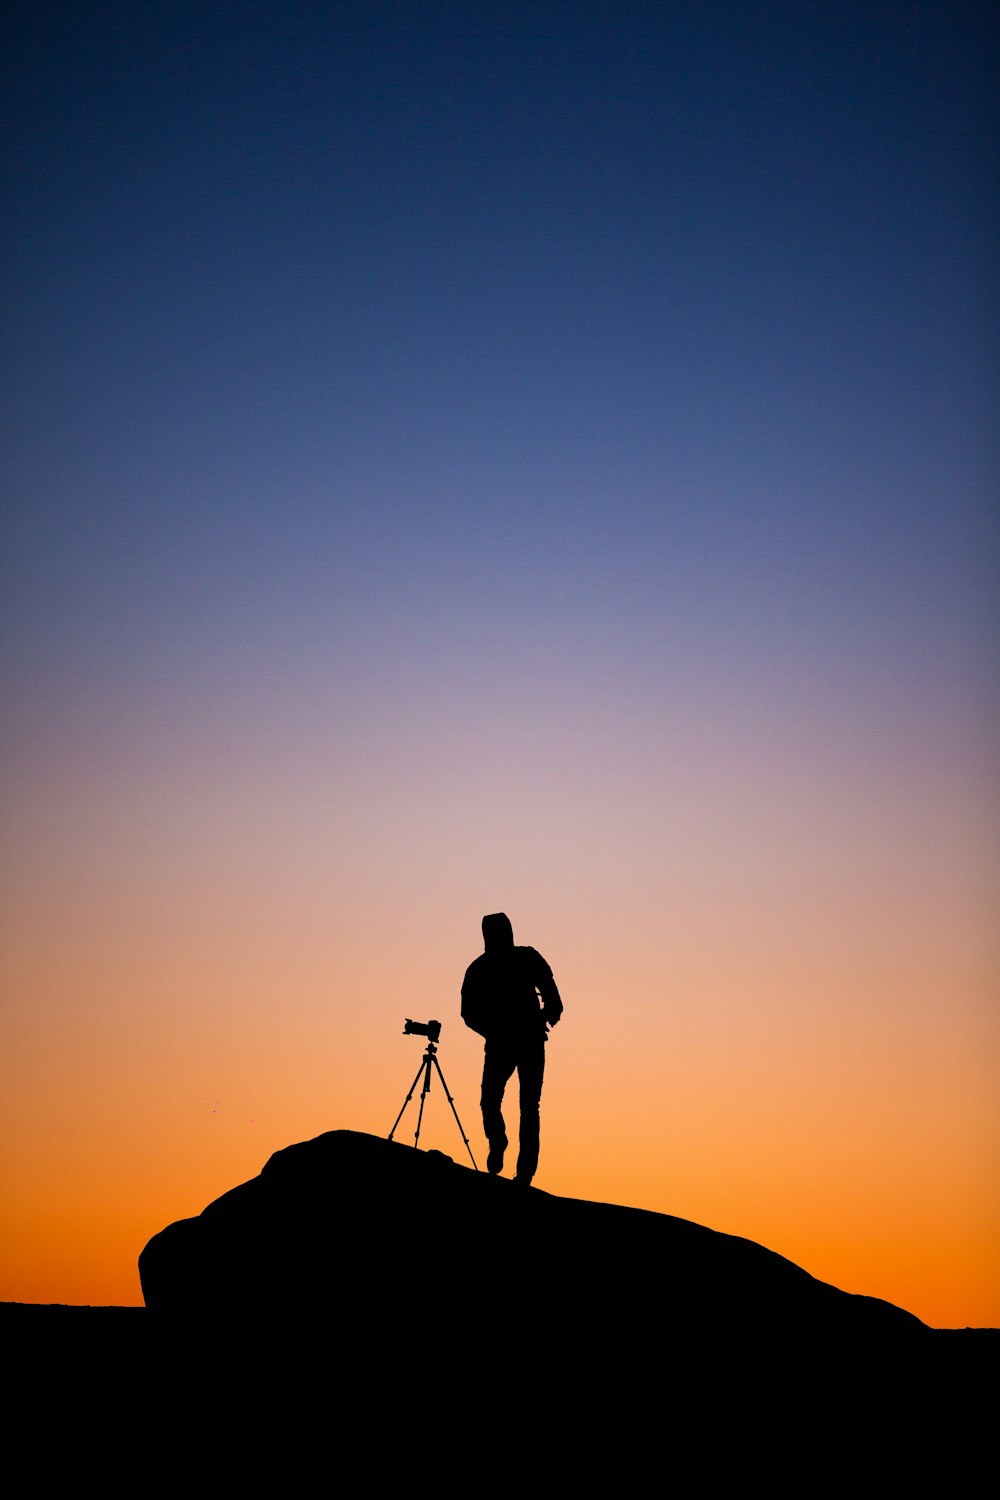 silhouette di persona in piedi accanto alla fotocamera DSLR con supporto al tramonto